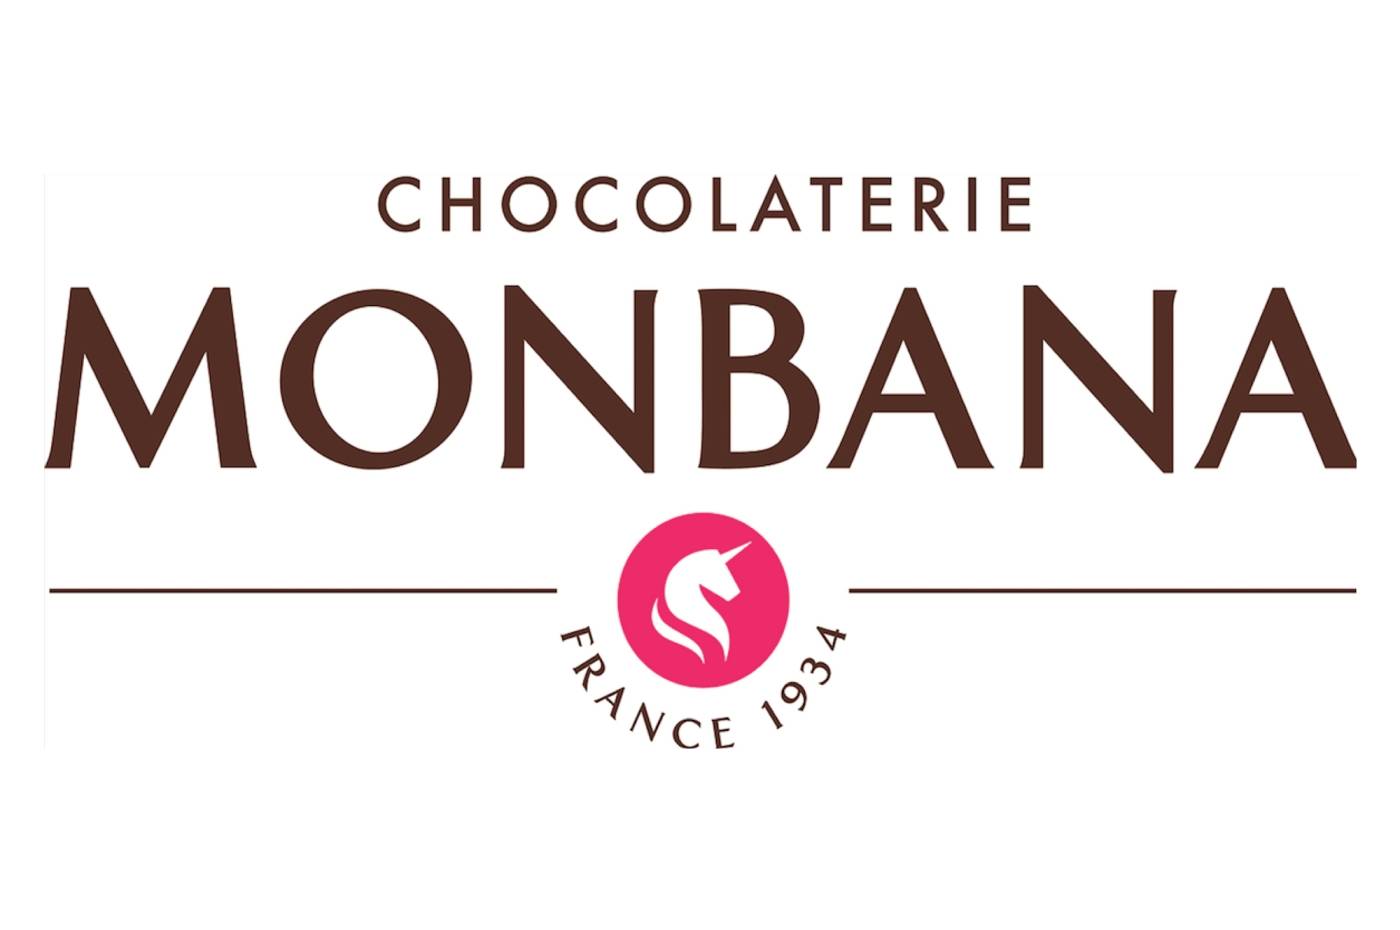 Monbana Chocolat